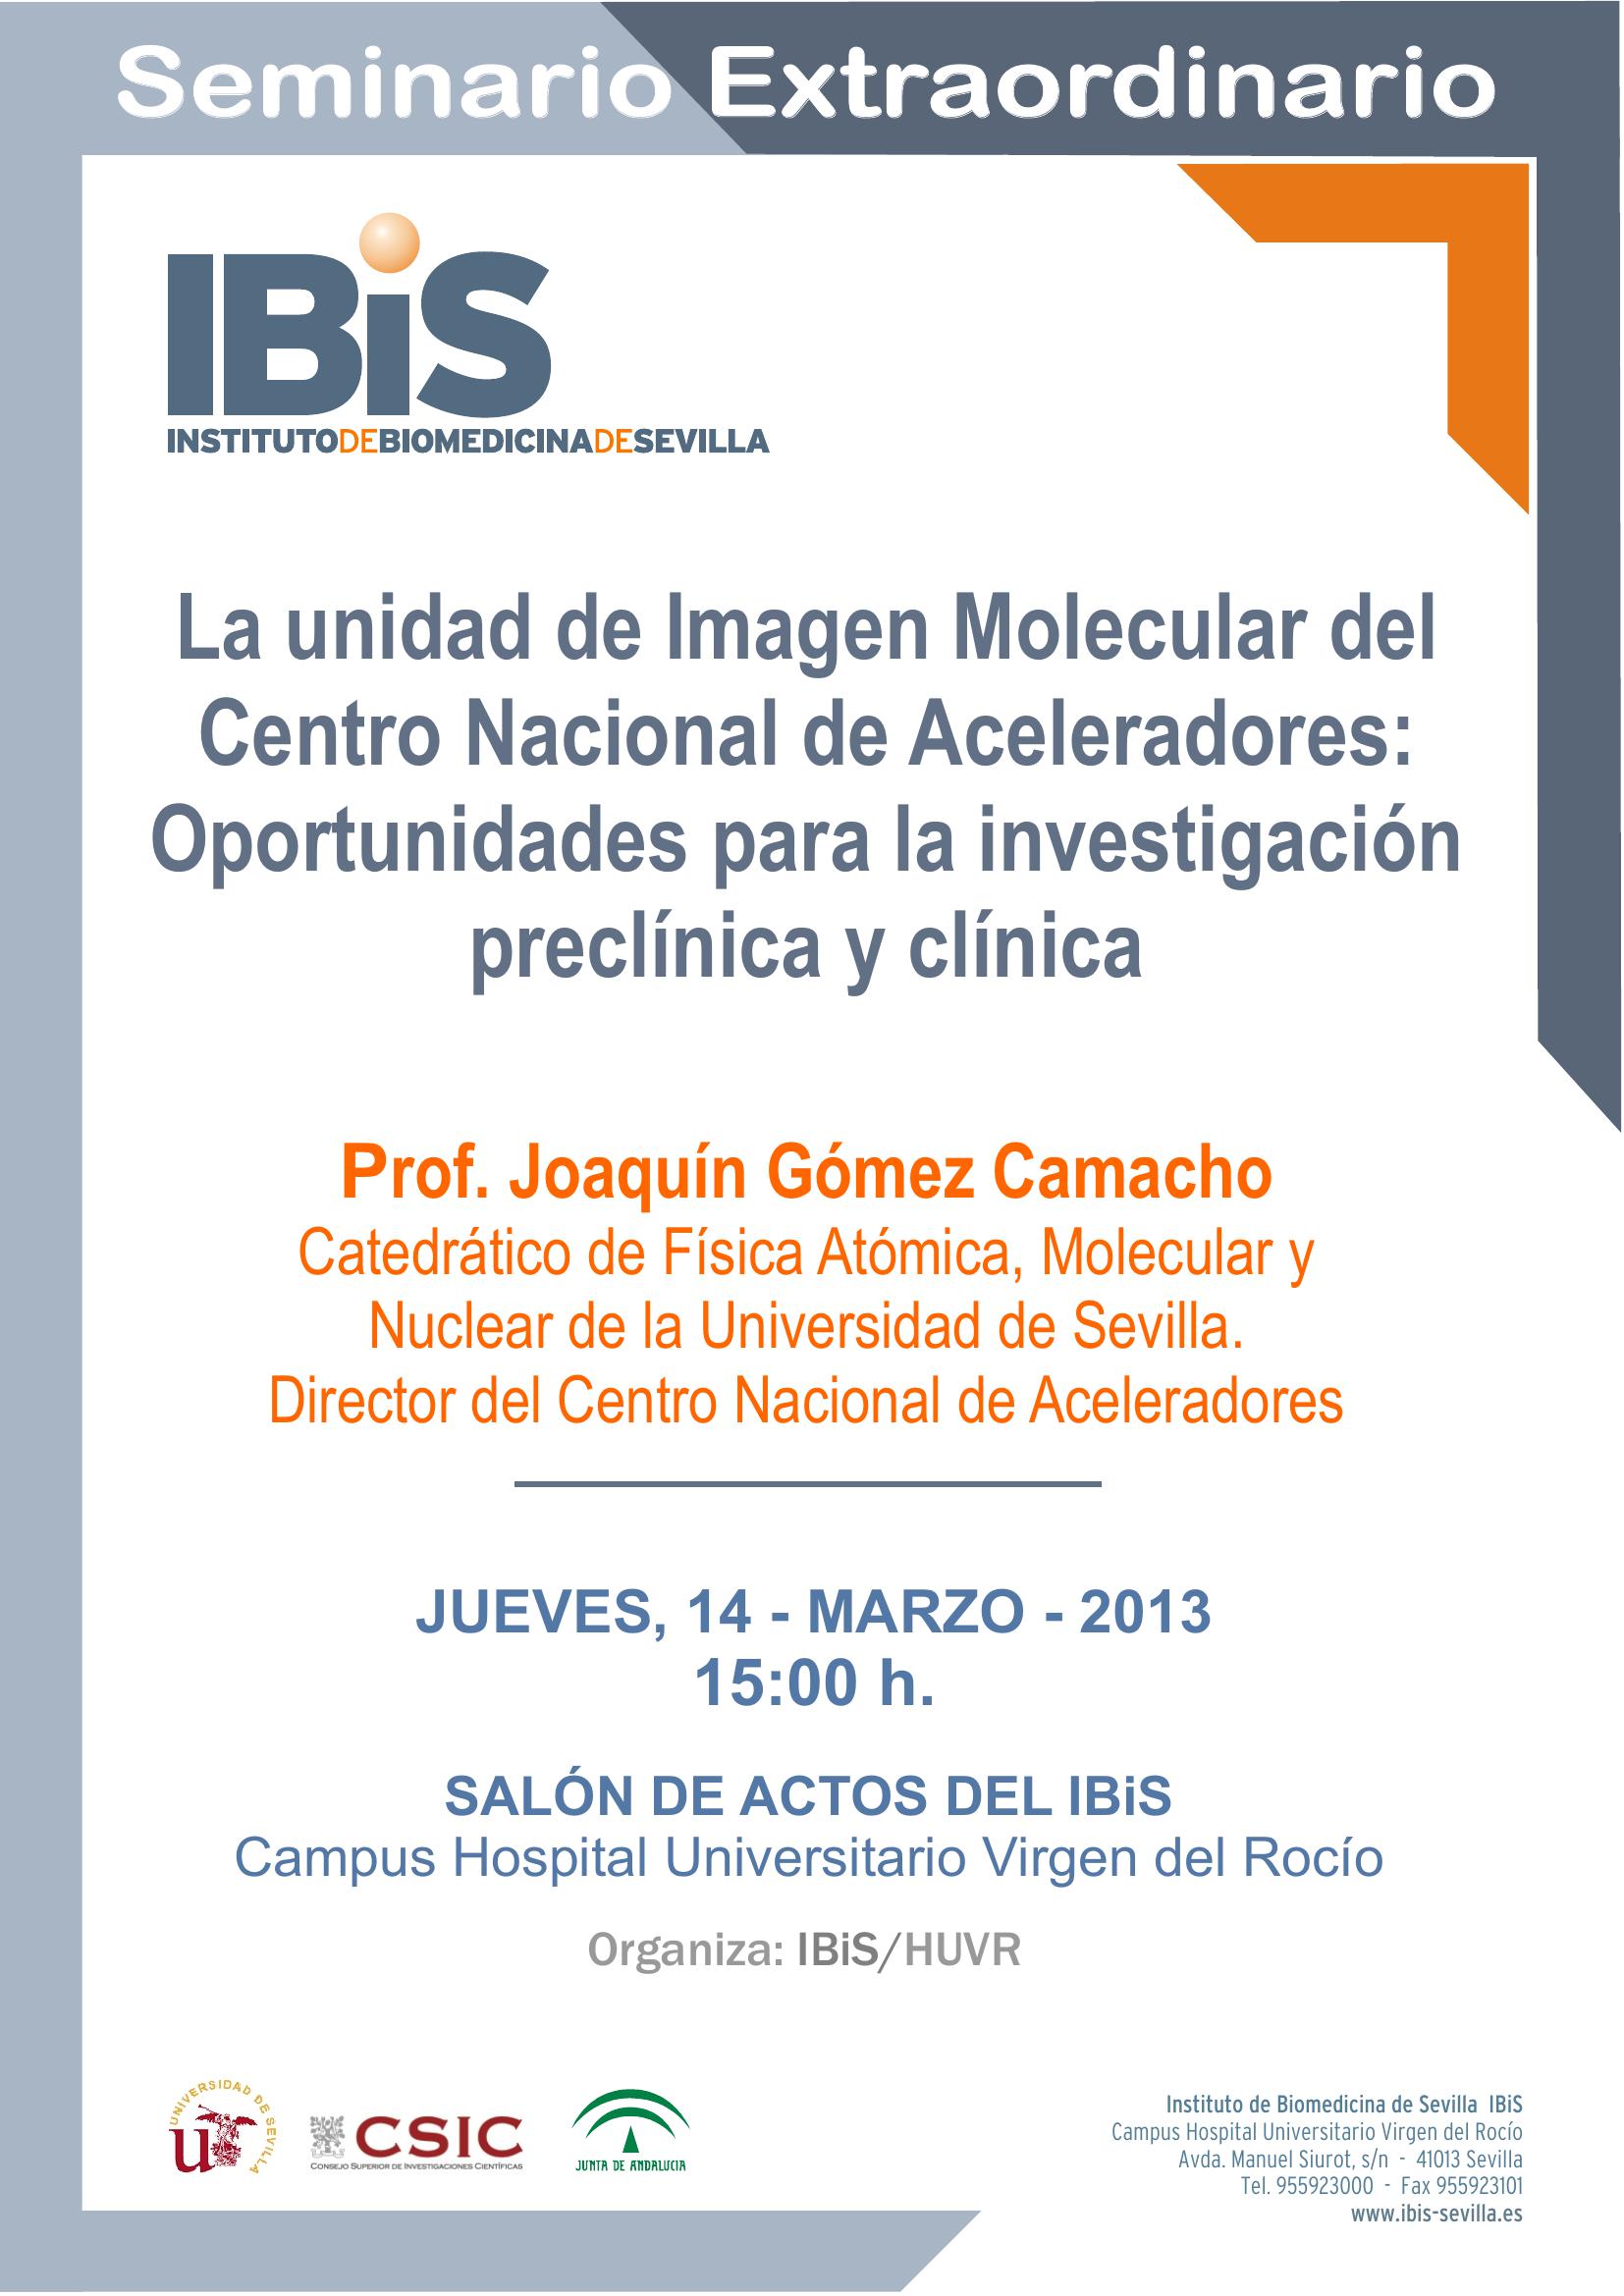 Poster: La unidad de Imagen Molecular del Centro Nacional de Aceleradores: Oportunidades para la investigación preclínica y clínica.